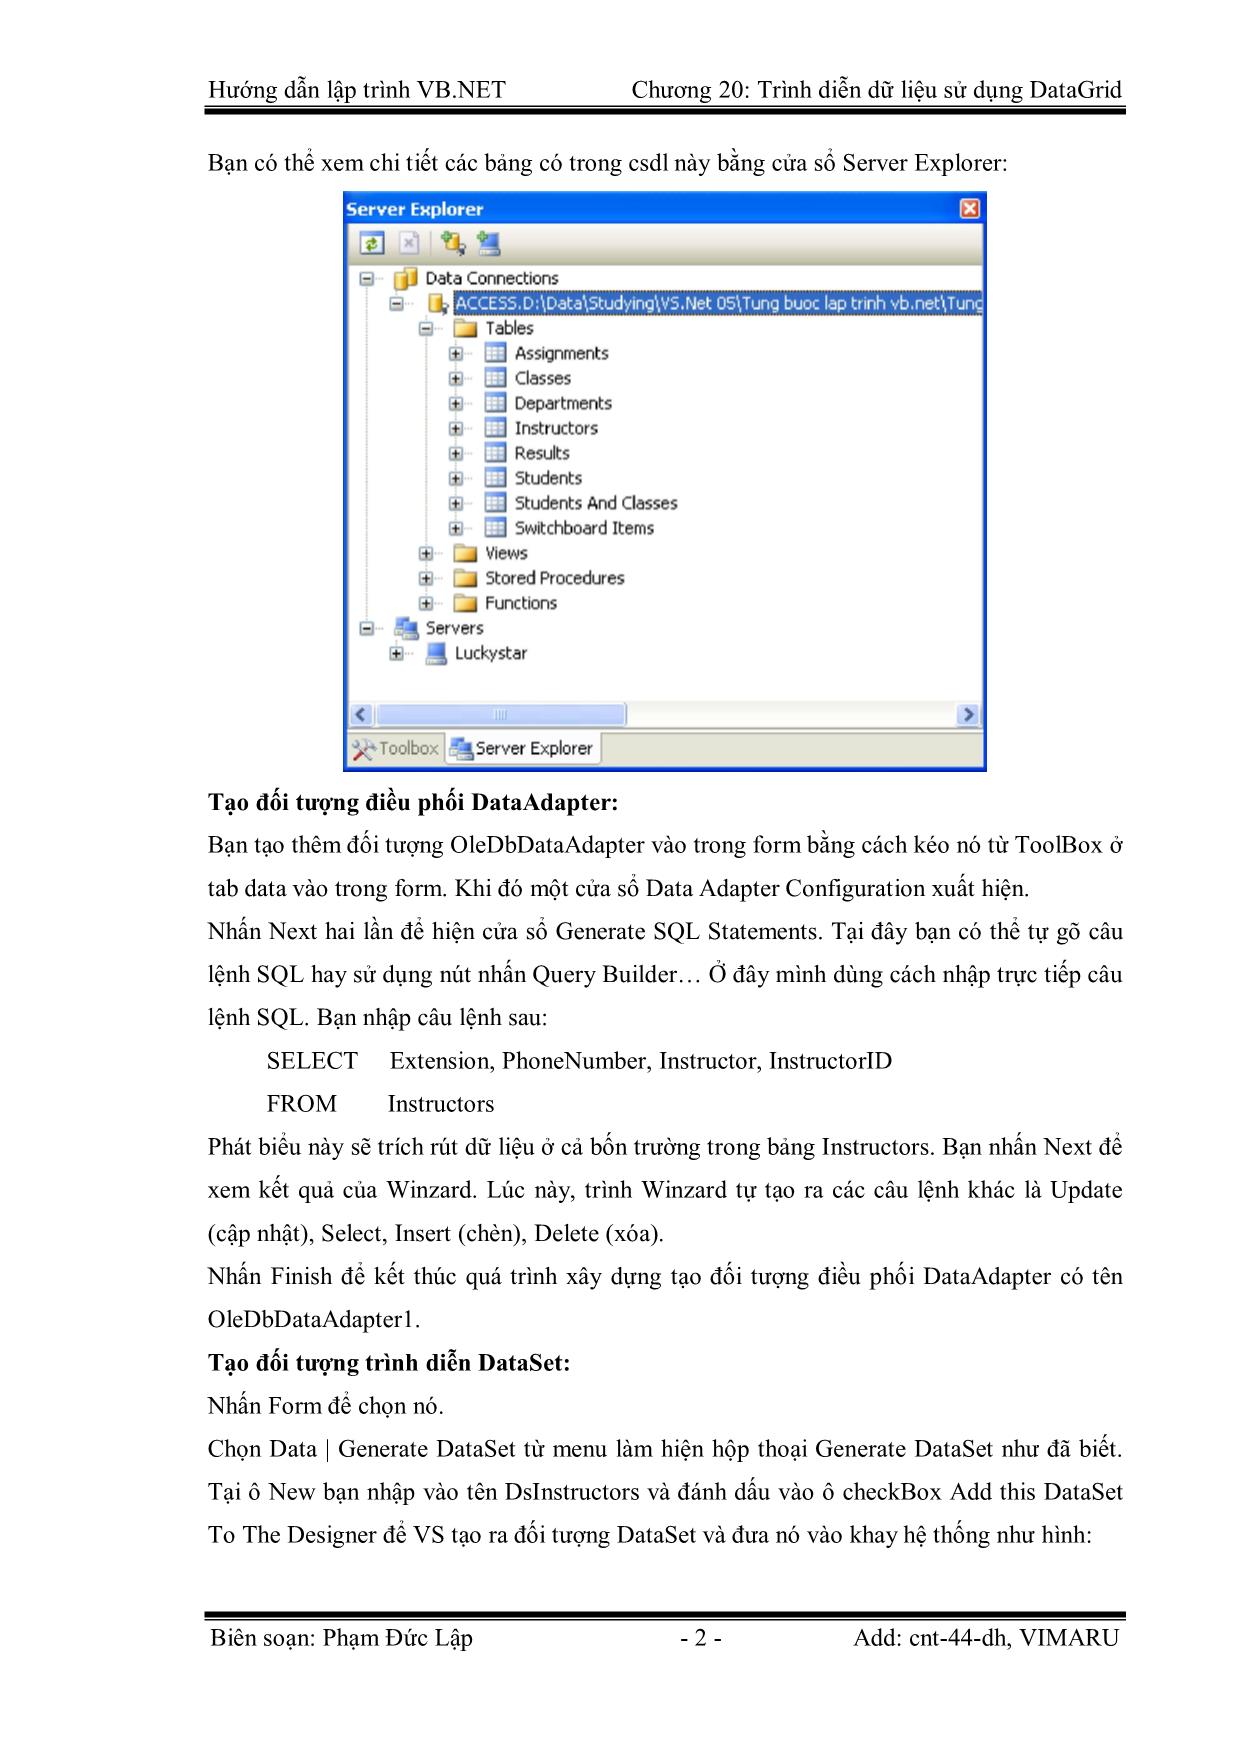 Giáo trình Hướng dẫn lập trình VB.NET - Chương 20: Trình diễn dữ liệu sử dụng điều khiển DataGrid - Phạm Đức Lập trang 2